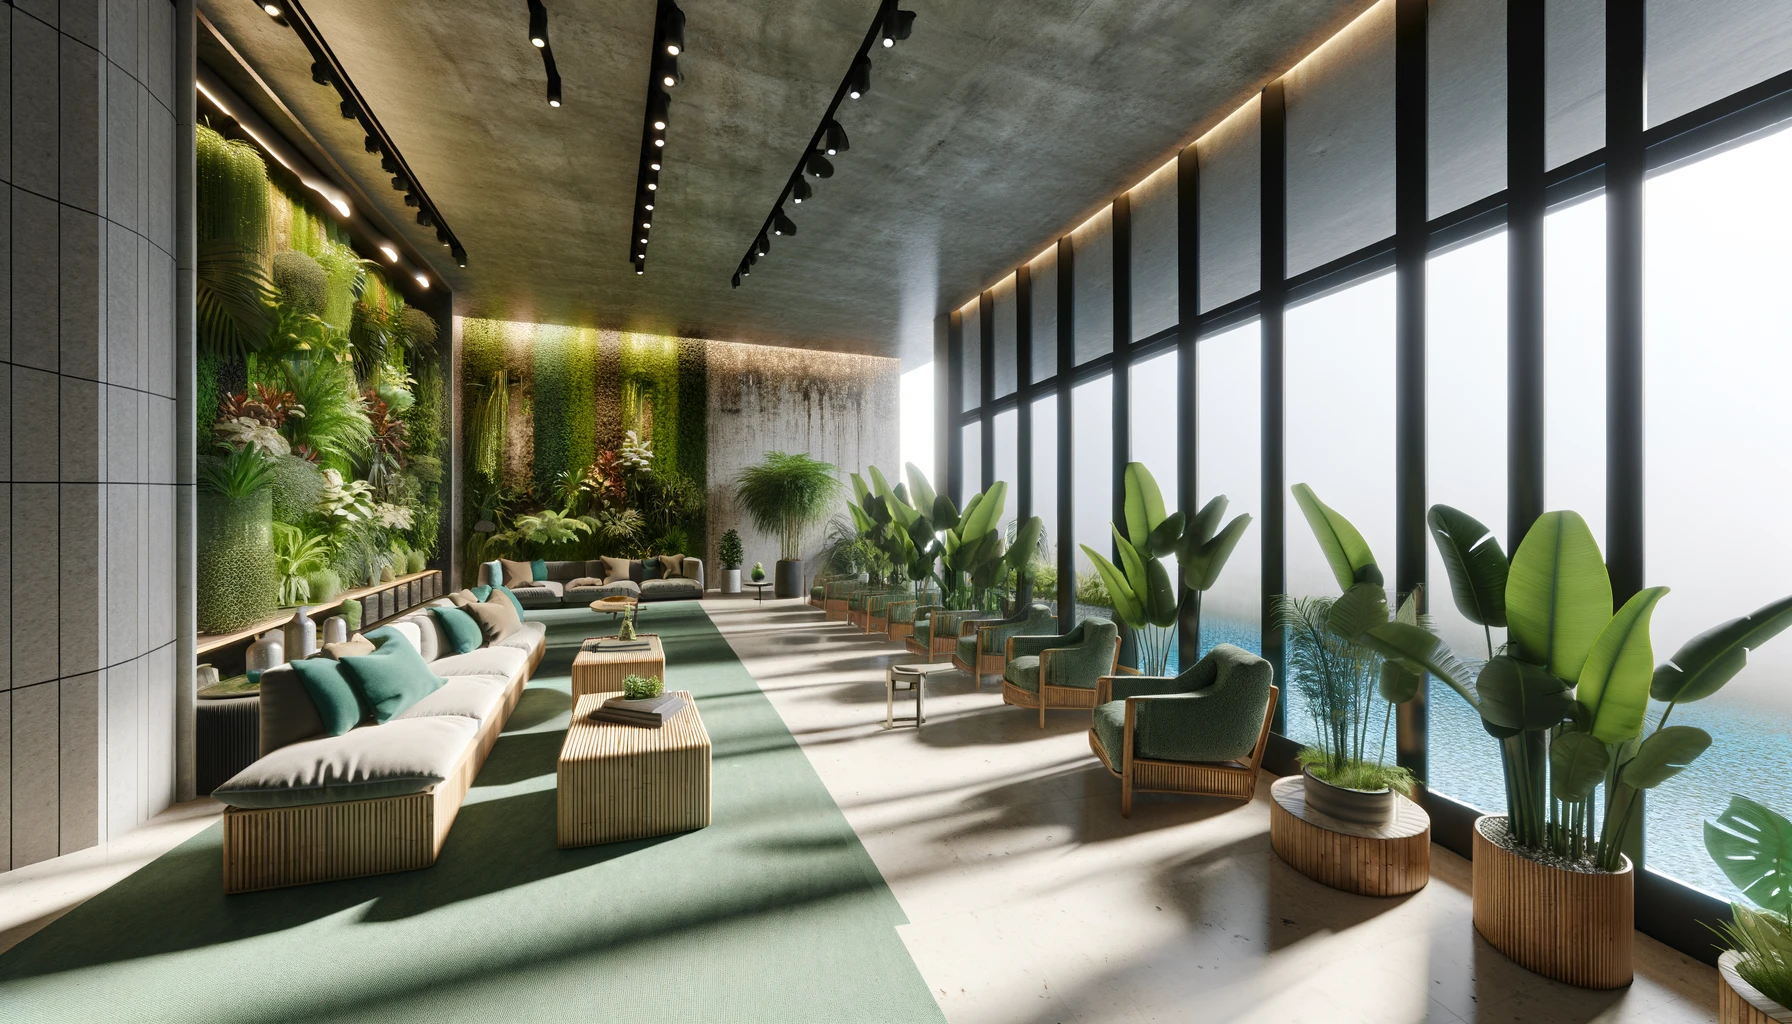 Modern indoor lounge with vertical garden and ocean view.